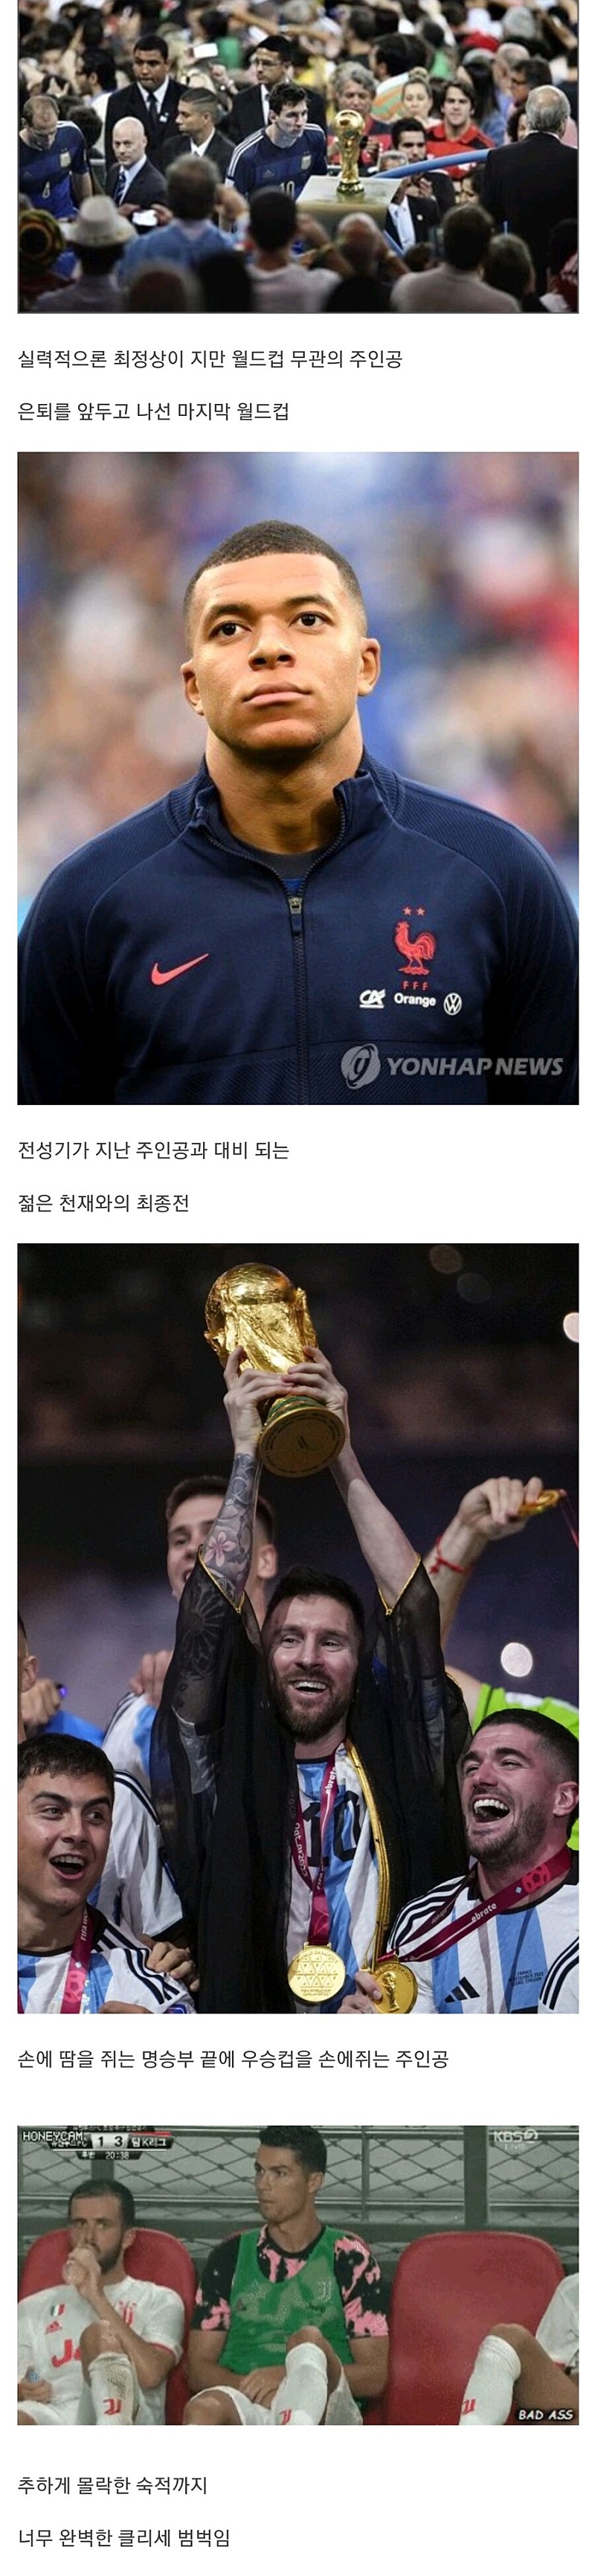 클리셰 범벅의 축구 만화 전개.jpg